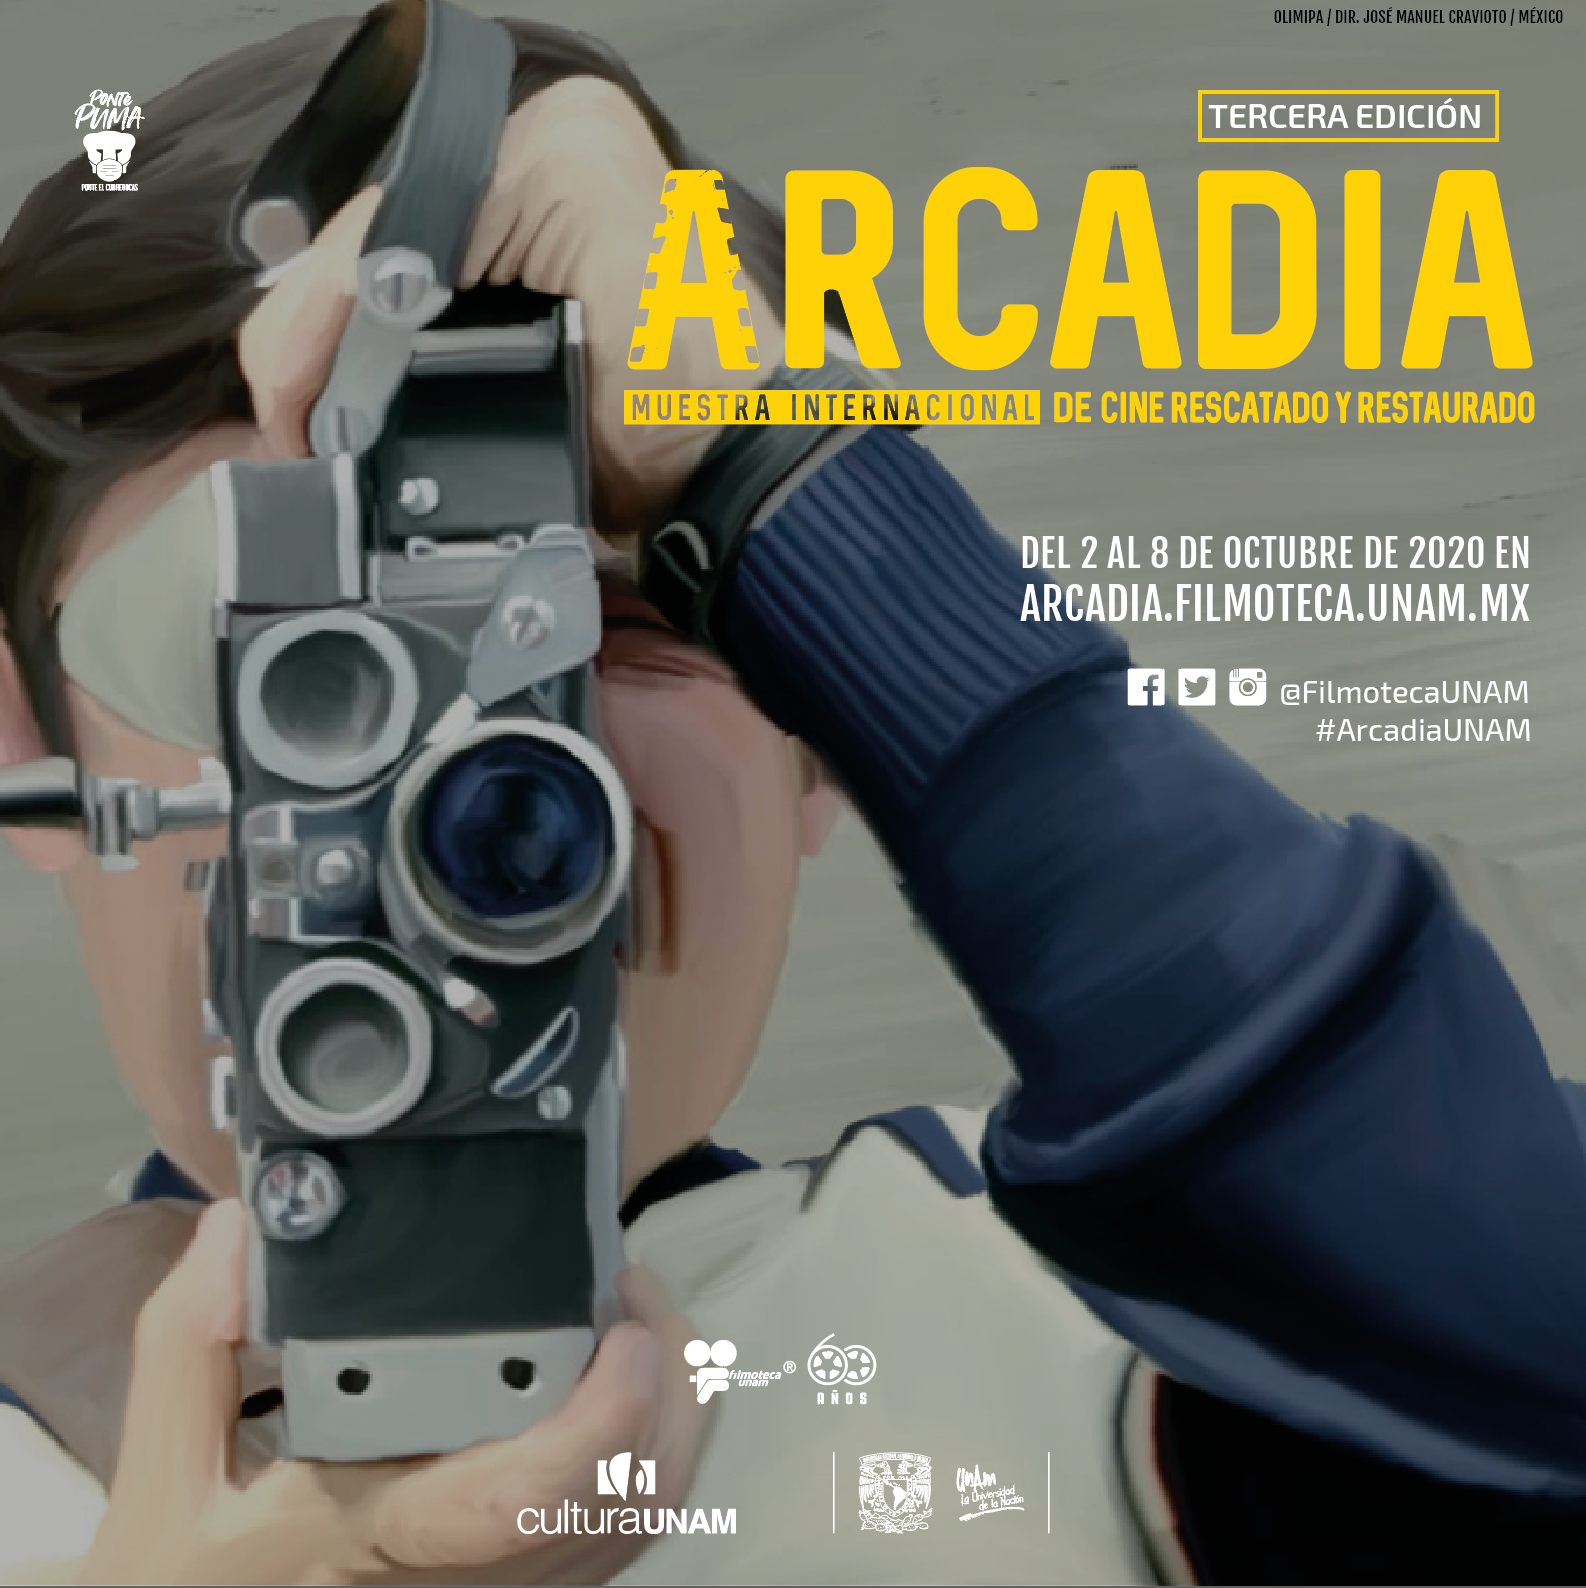 Llega la 3a edición de Arcadia UNAM, la Muestra Internacional de Cine Rescatado y Restaurado